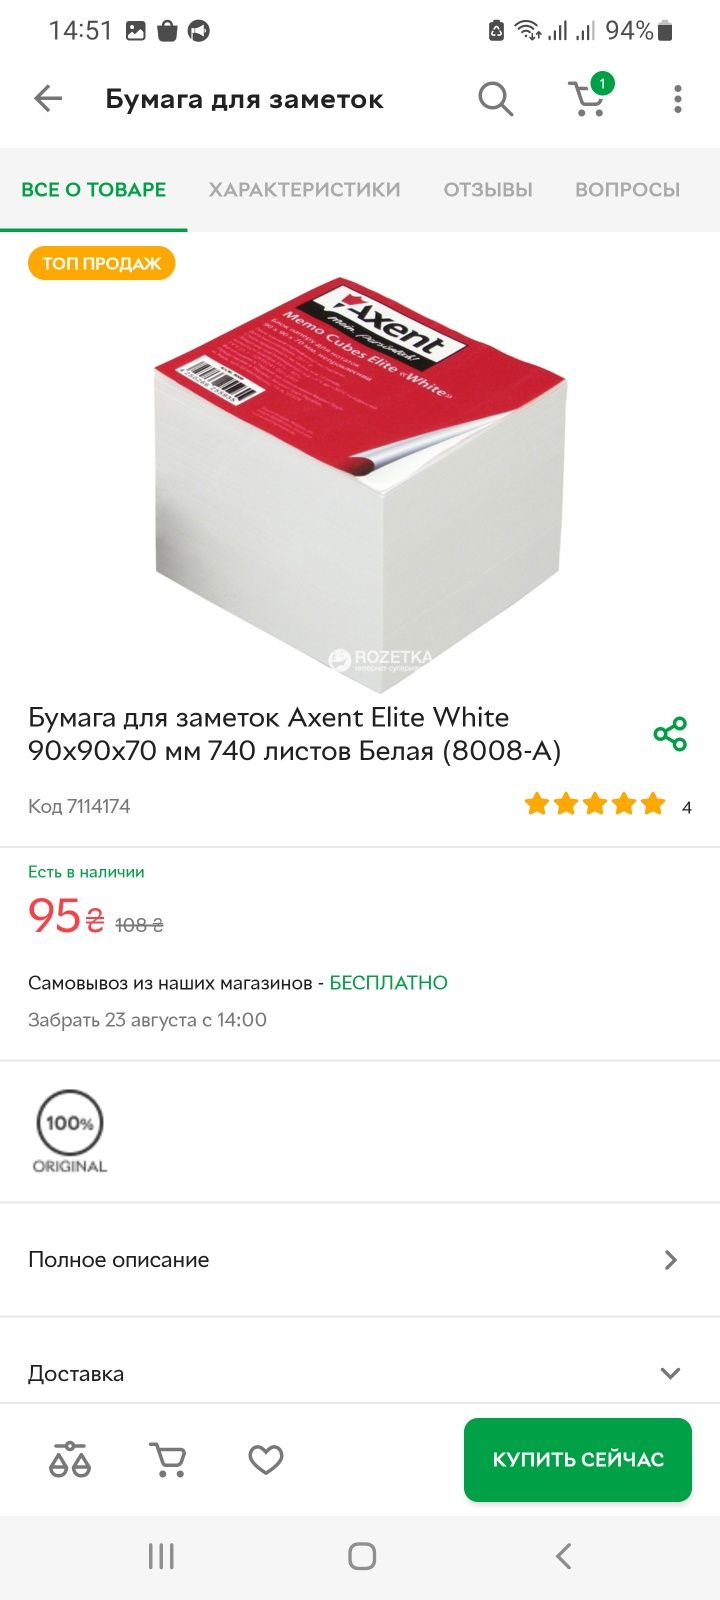 Бумага для заметок Axent Elite White 90x90x70 мм 740 листов Белая